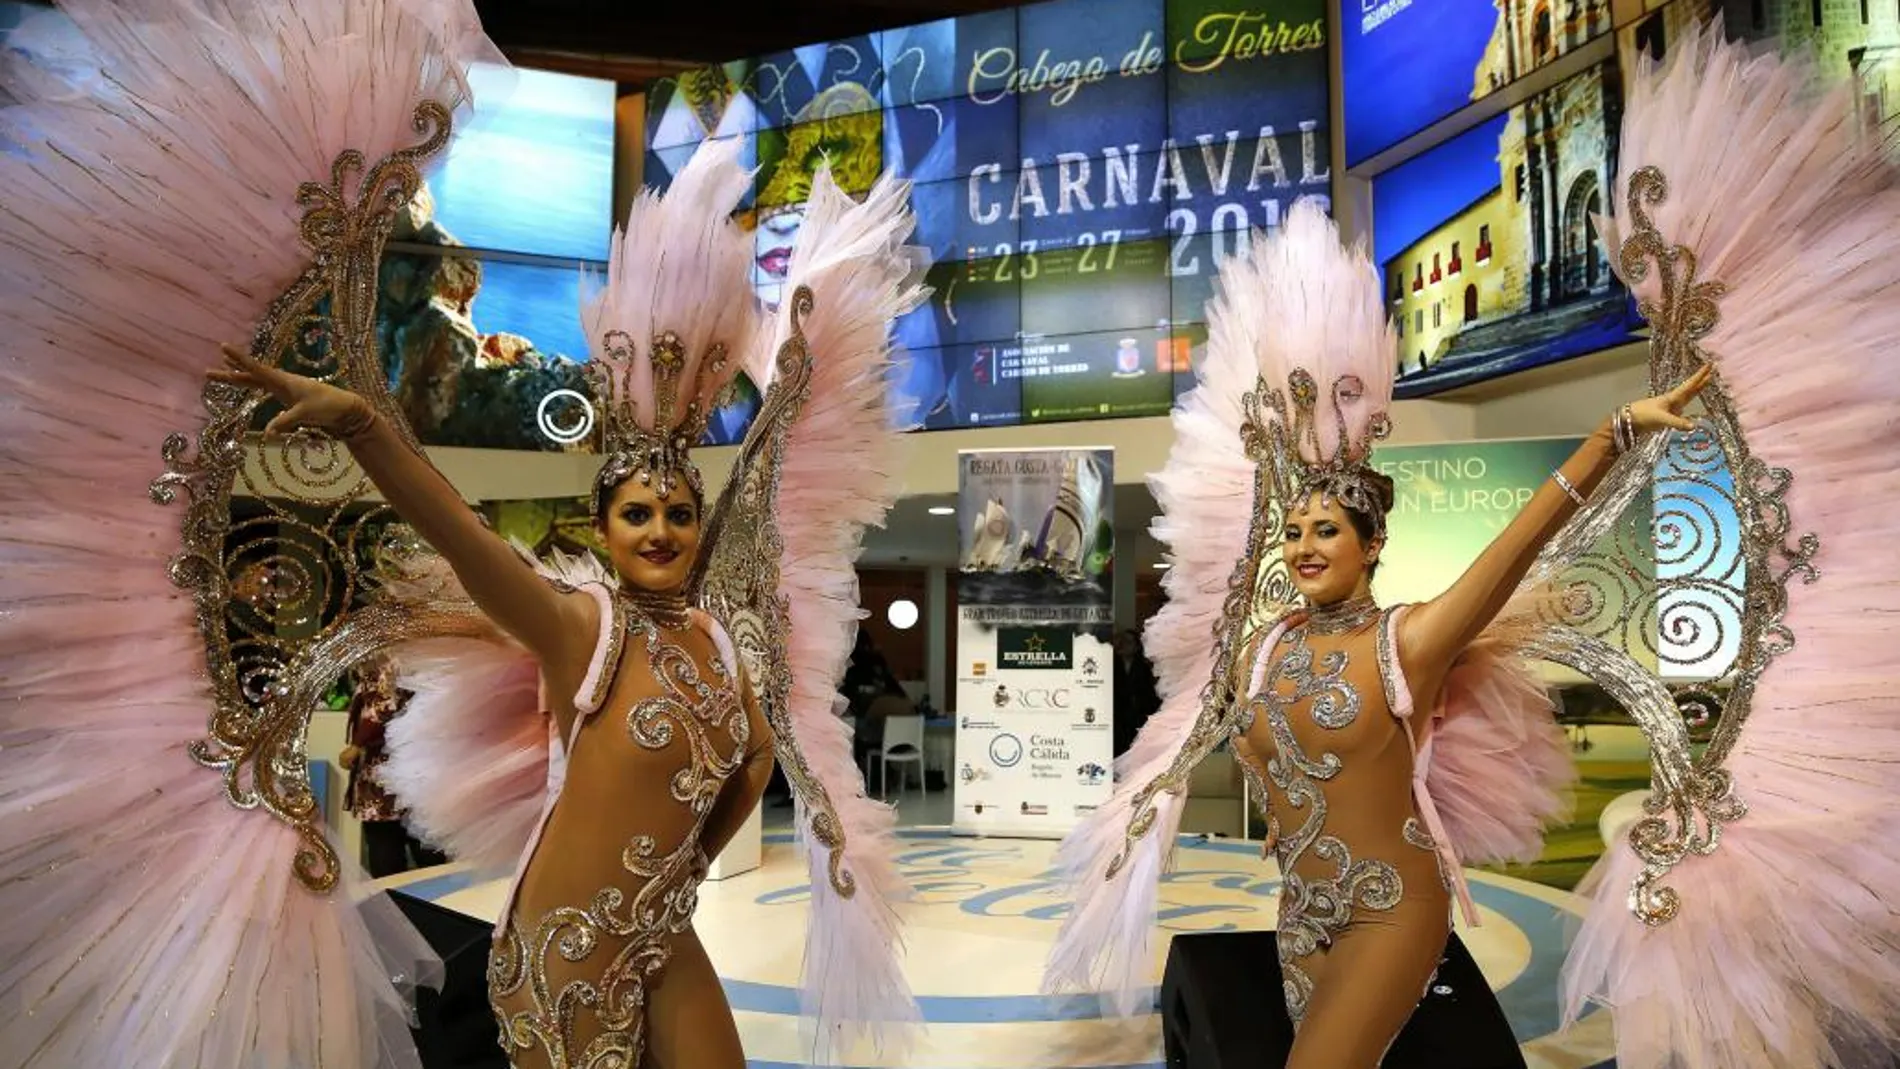 Promoción del carnaval de Cabezo de Torres